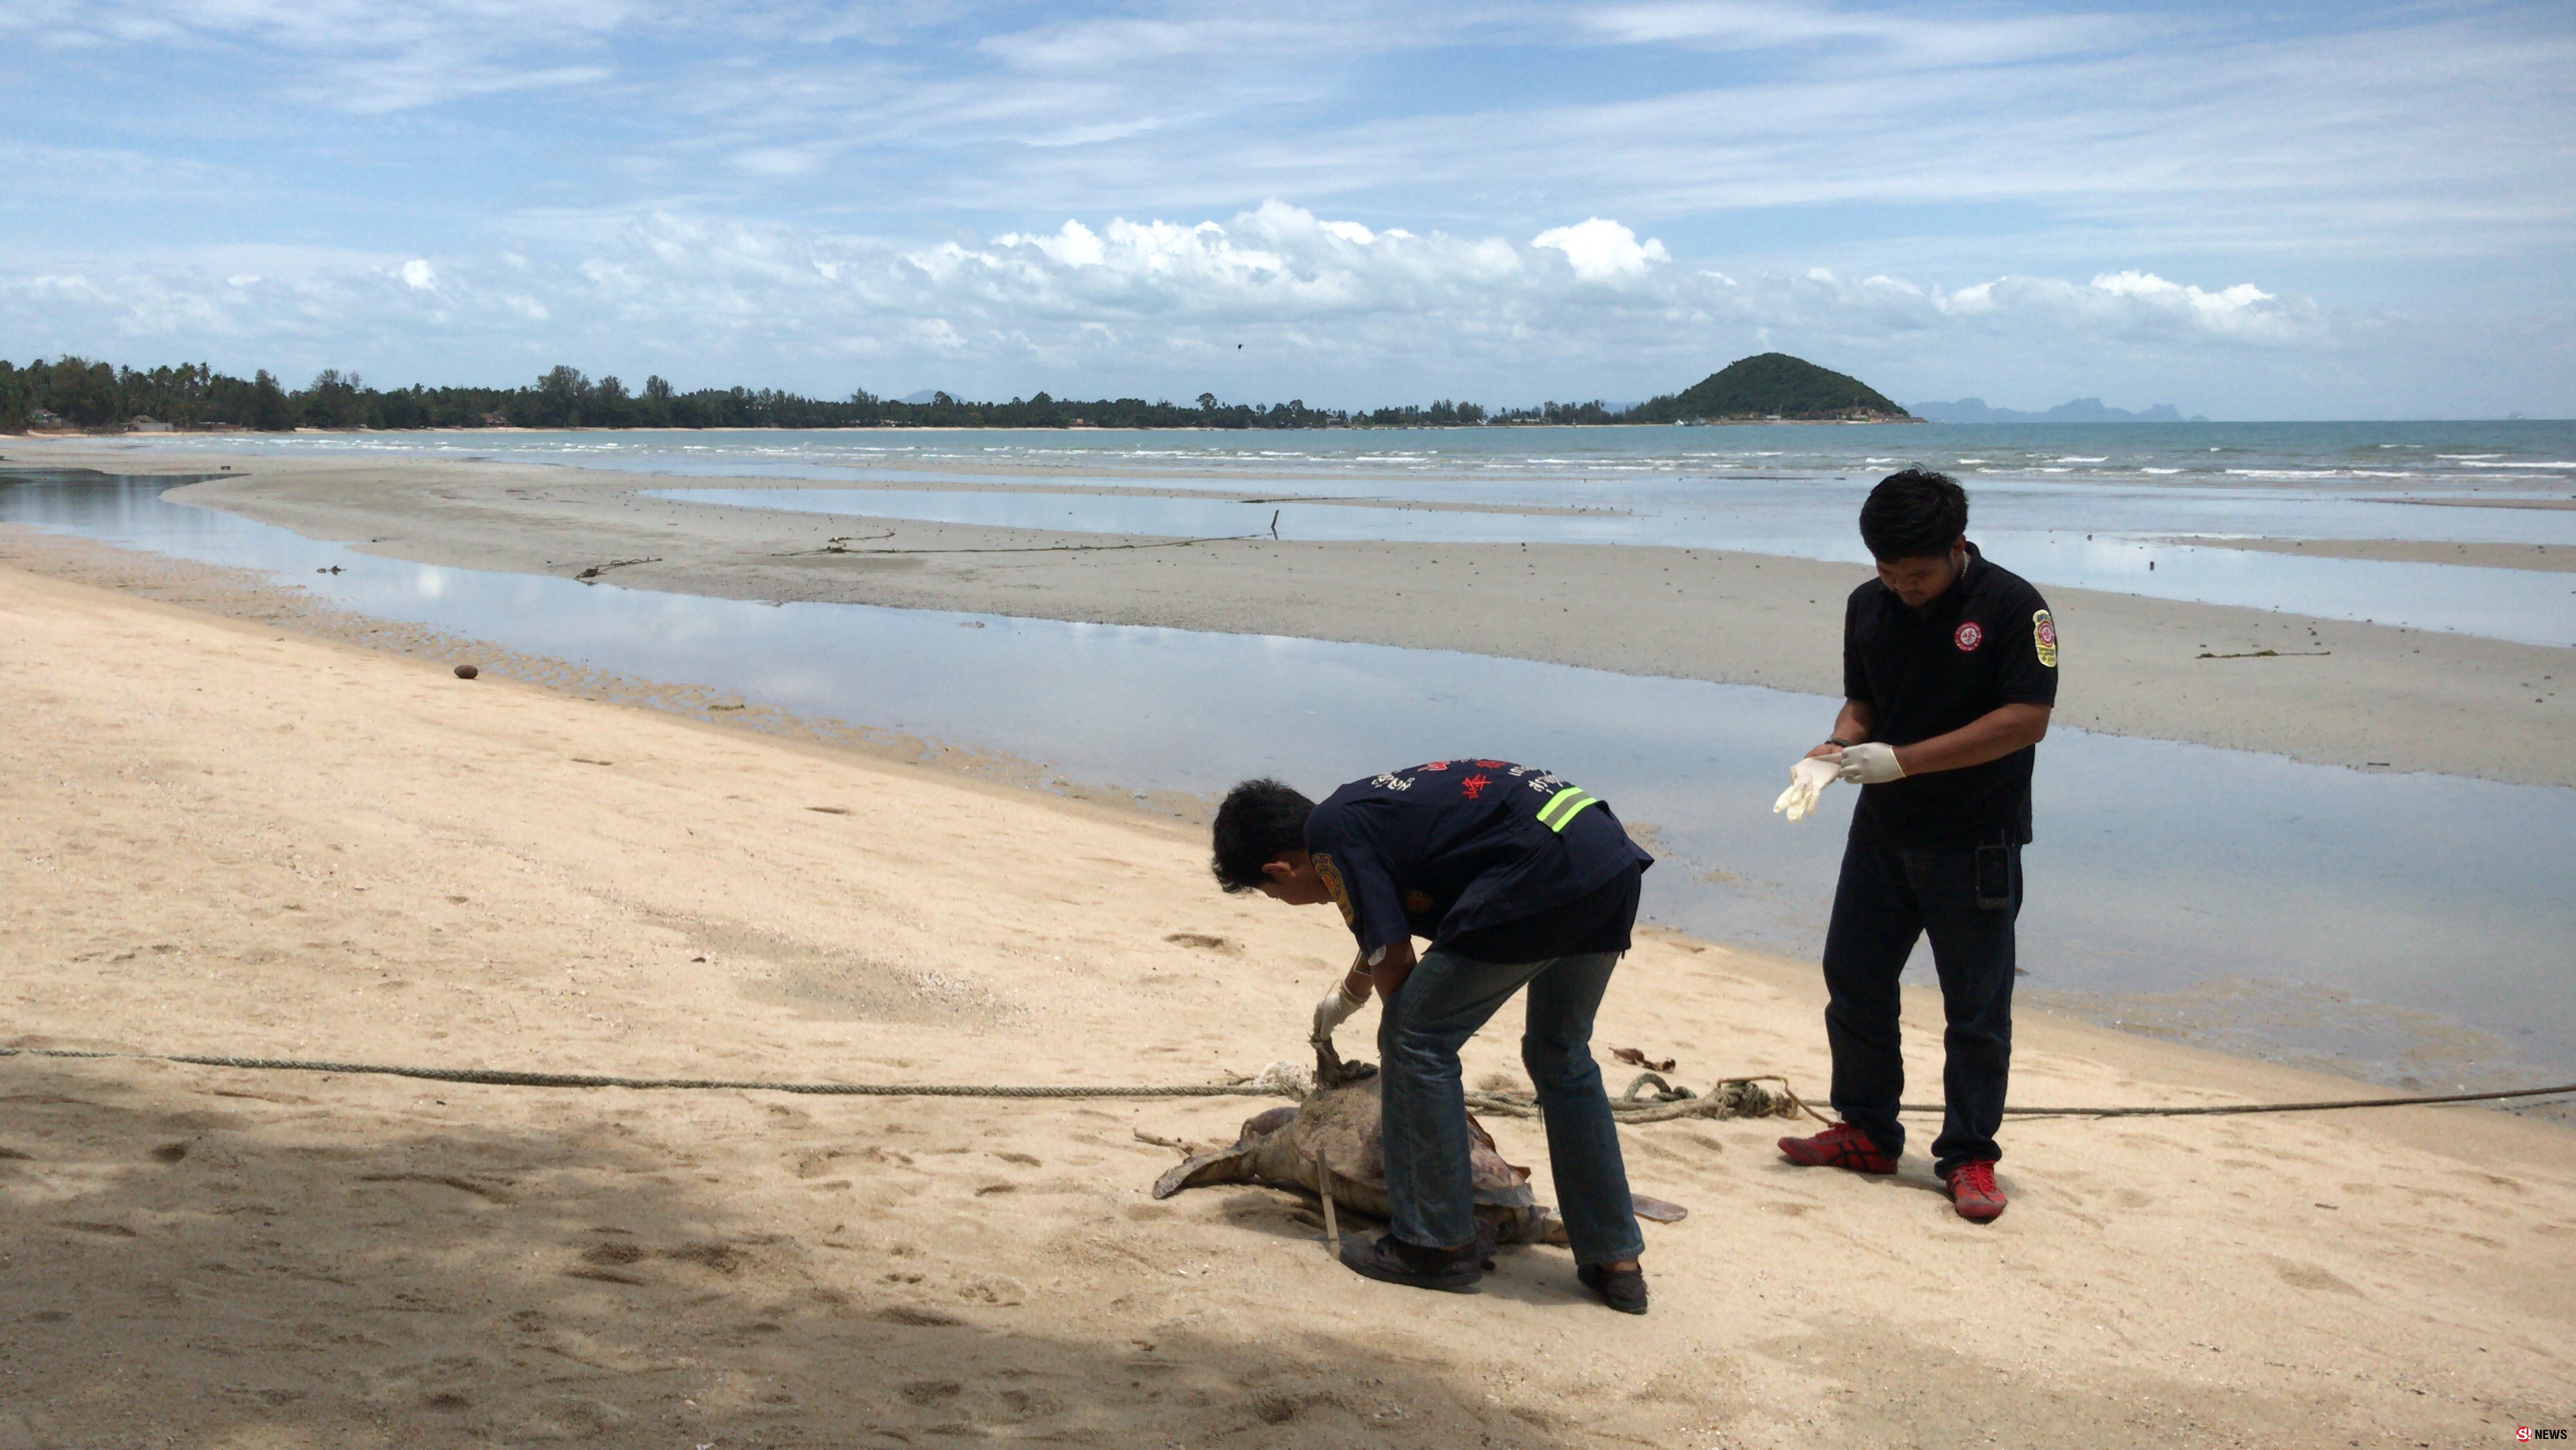 พบซากเต่าตนุถูกคลื่นซัดมาเกยตื้นชายหาดเกาะสมุยเป็นตัวที่10ในรอบ2เดือนนี้